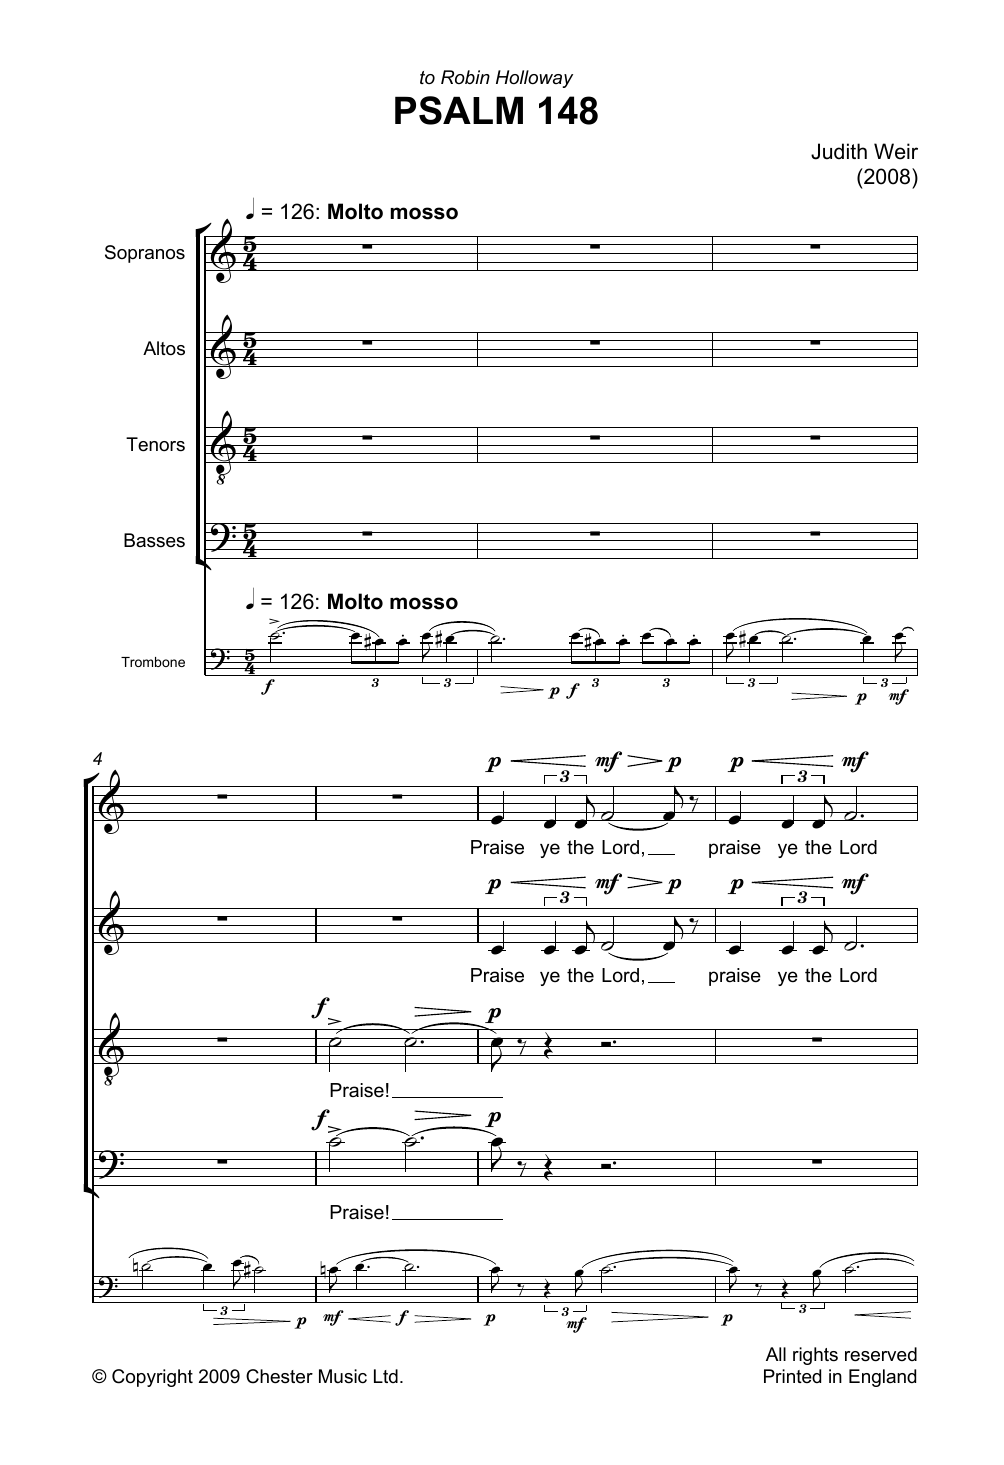 Download Judith Weir Psalm 148 Sheet Music